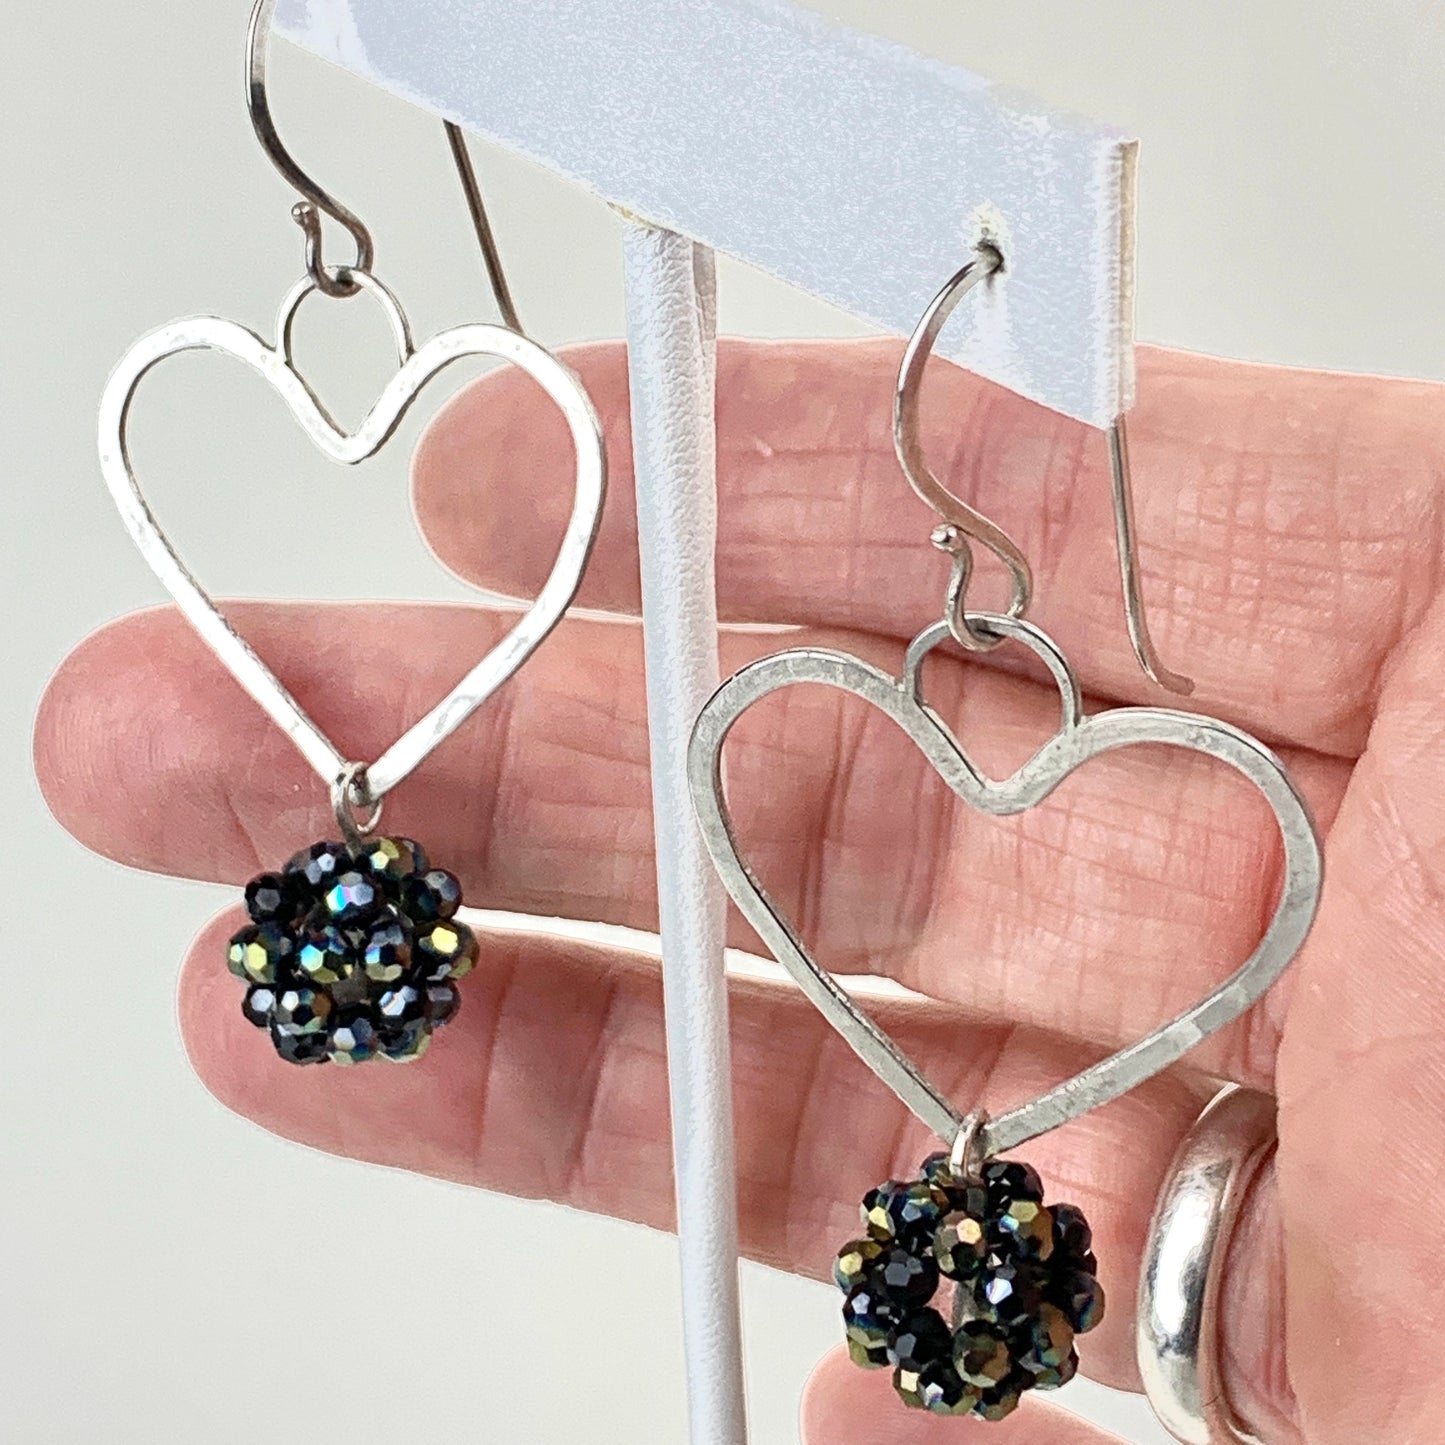 Heart earrings - sterling heart dangle earrings - boho style silver- dangle earrings for women - love jewelry for Valentines - handmade gift